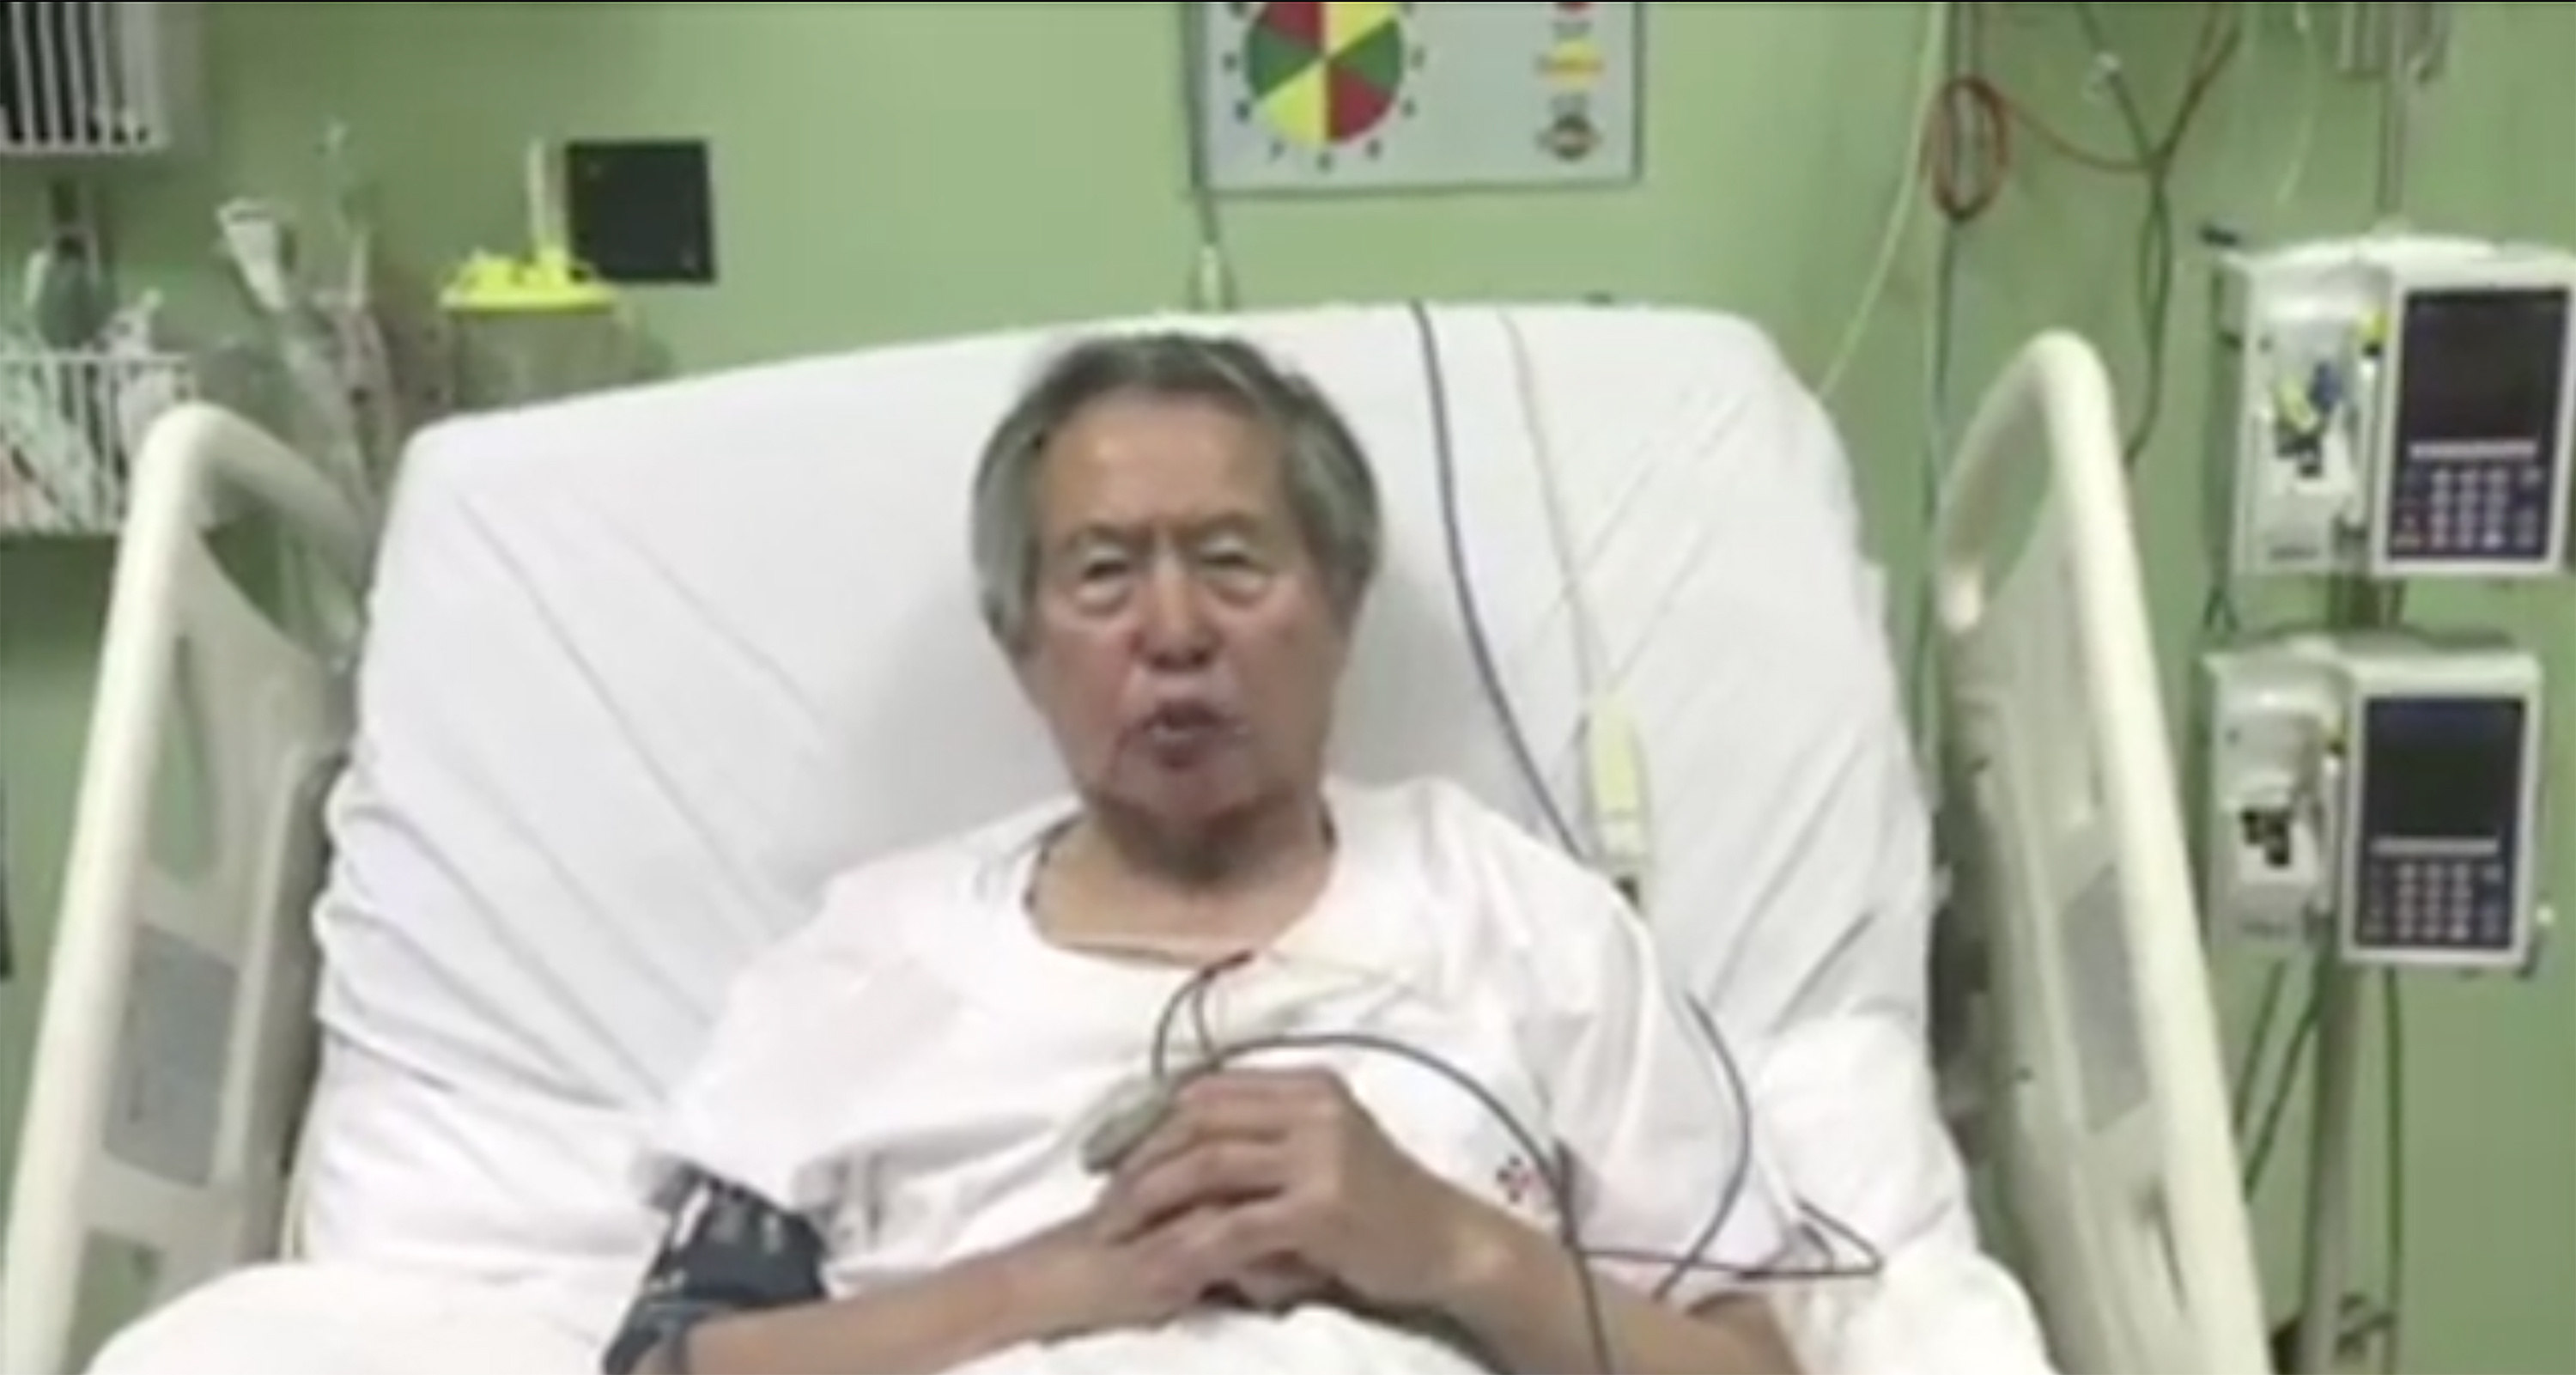 Fujimori pide perdón por haber defraudado a sus compatriotas, agradece indulto humanitario